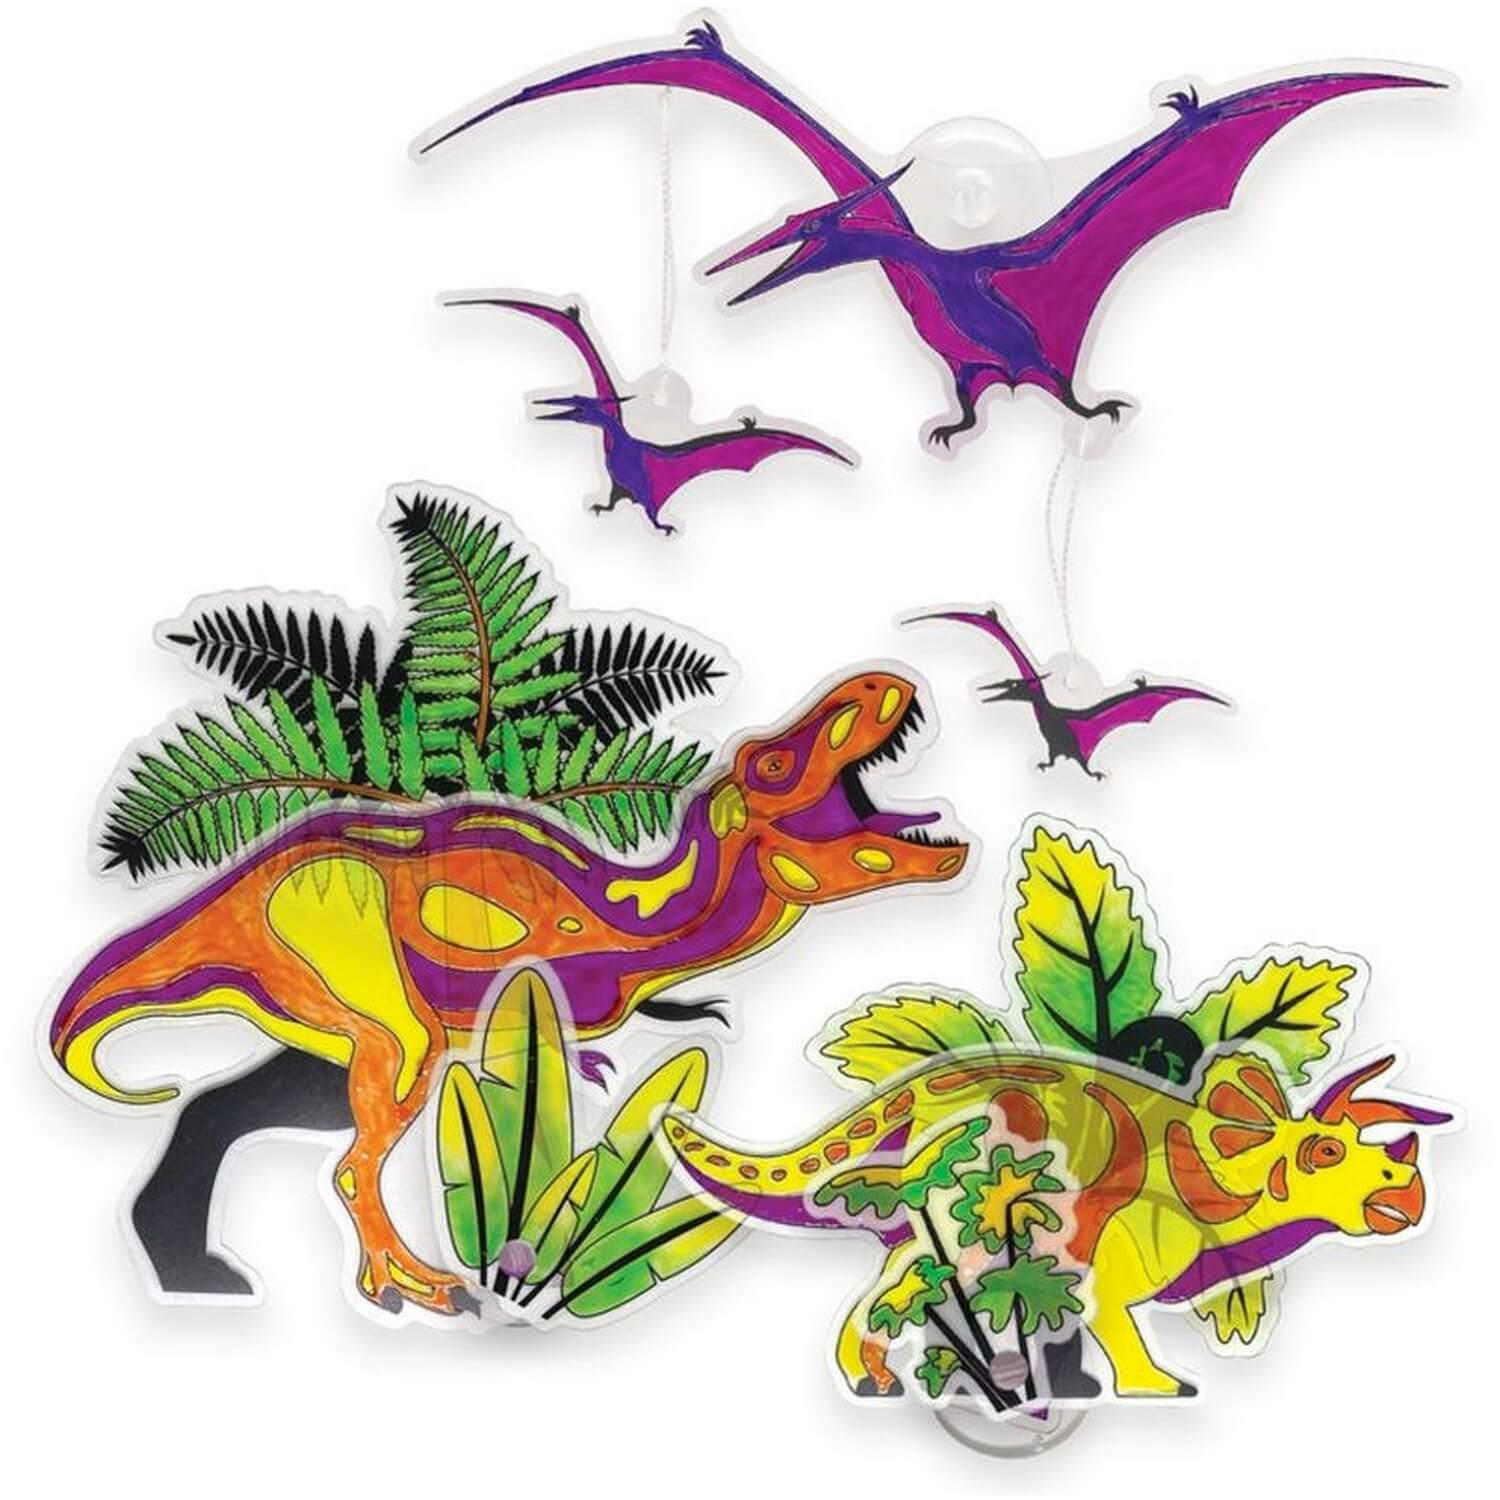 Attrape soleil : Dinosaures - Jeux et jouets Dinosart - Avenue des Jeux